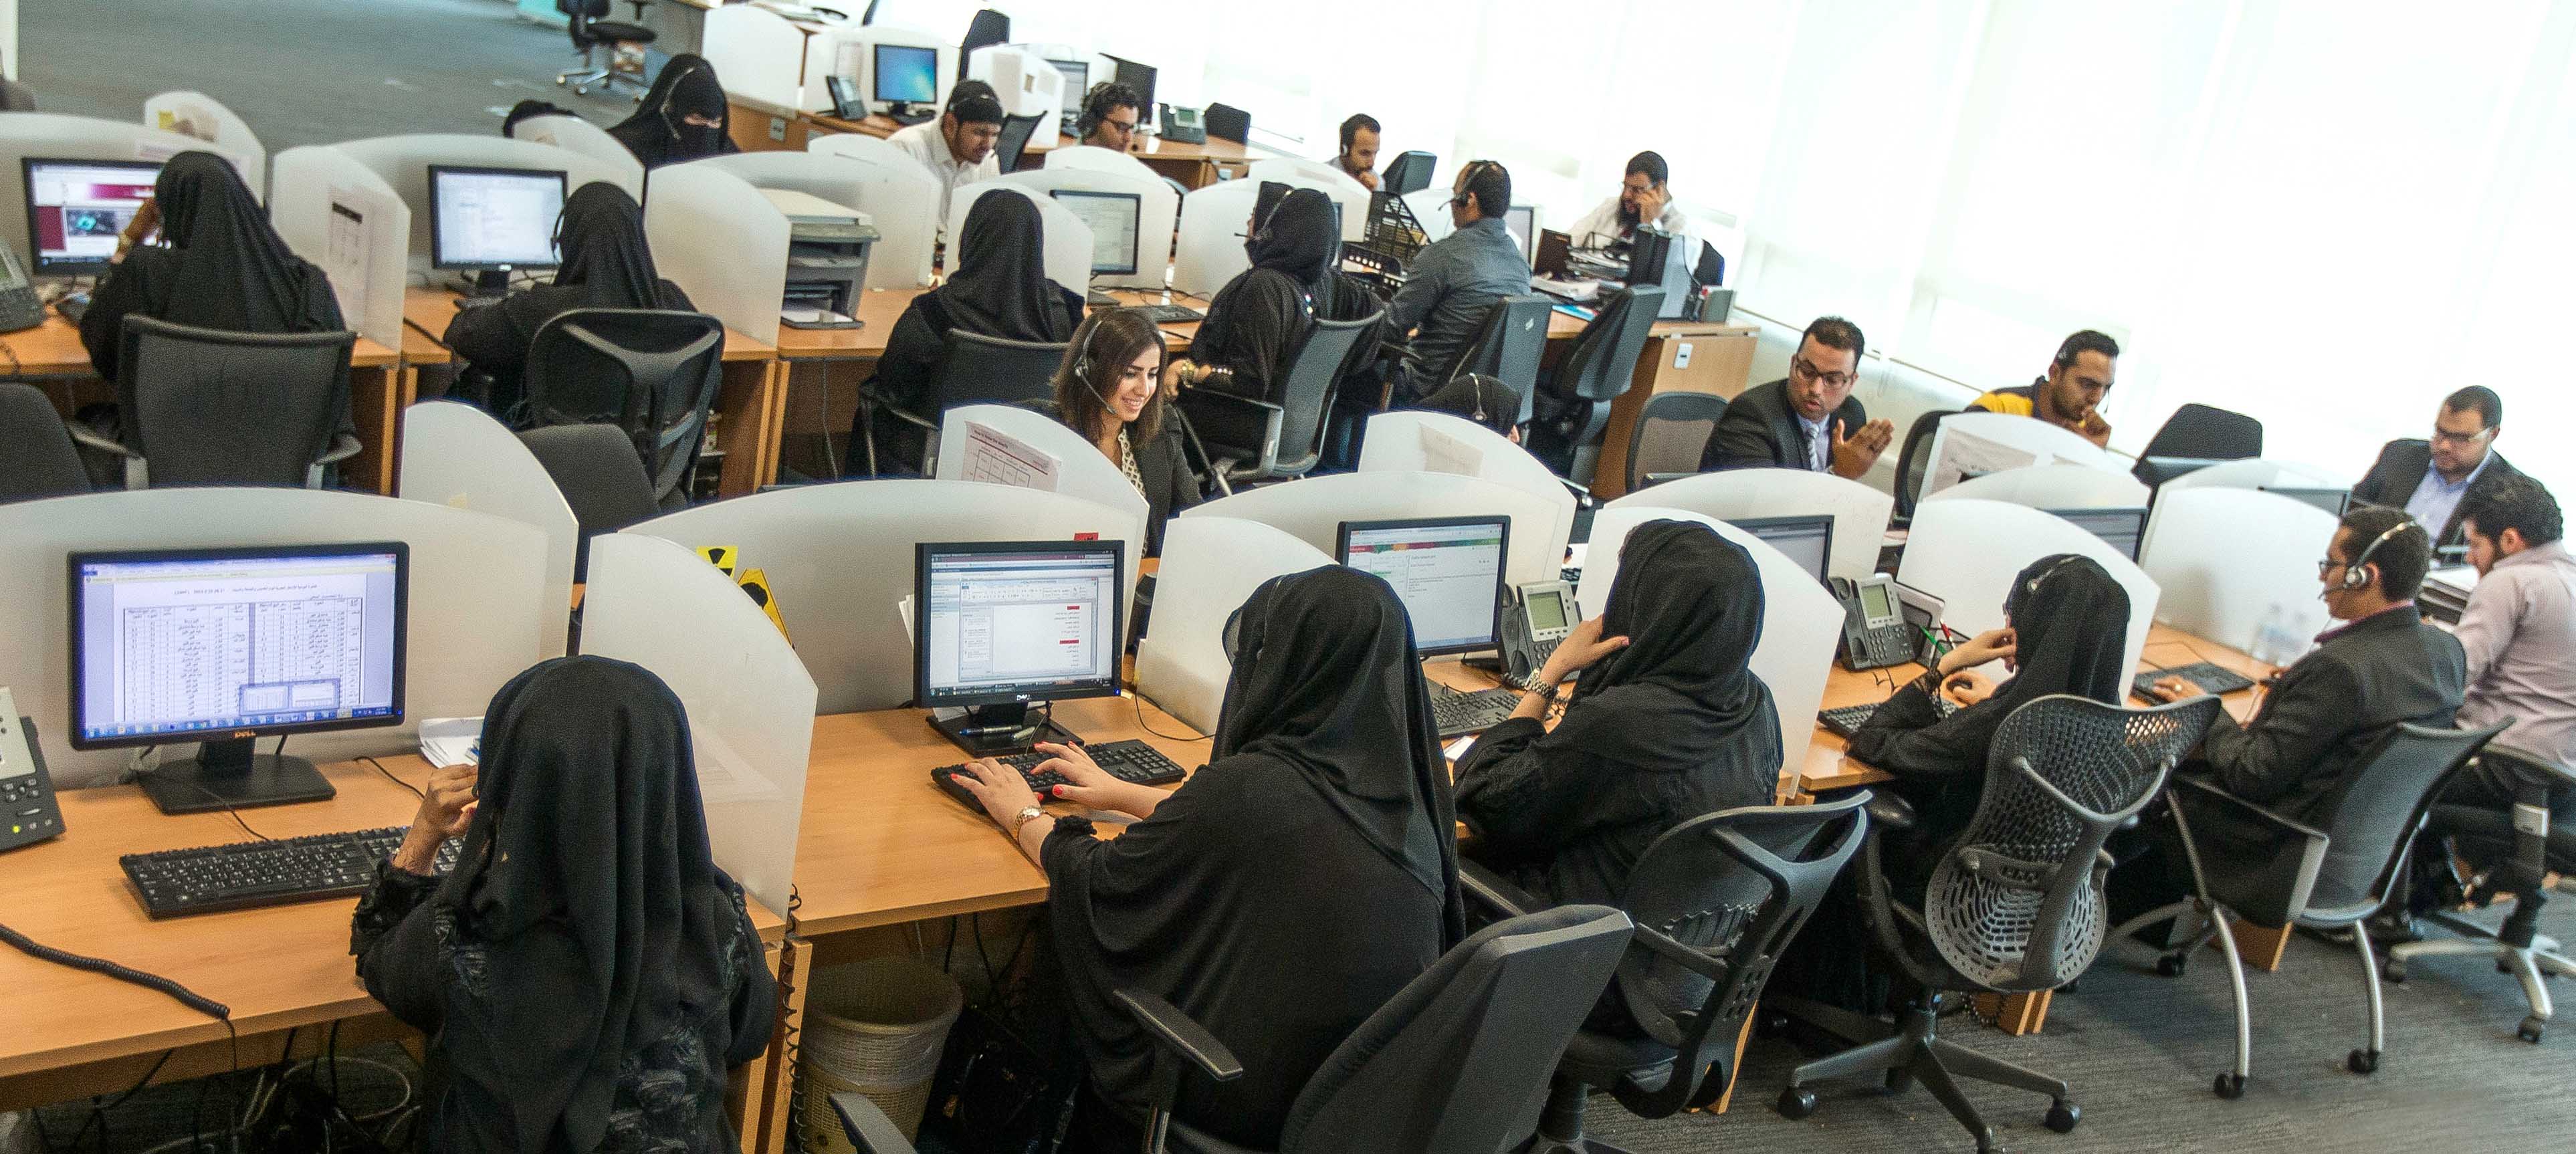 معلوماتية تمثل دولة قطر في قمة الشرق الأوسط لمراكز الاتصال الحكومية